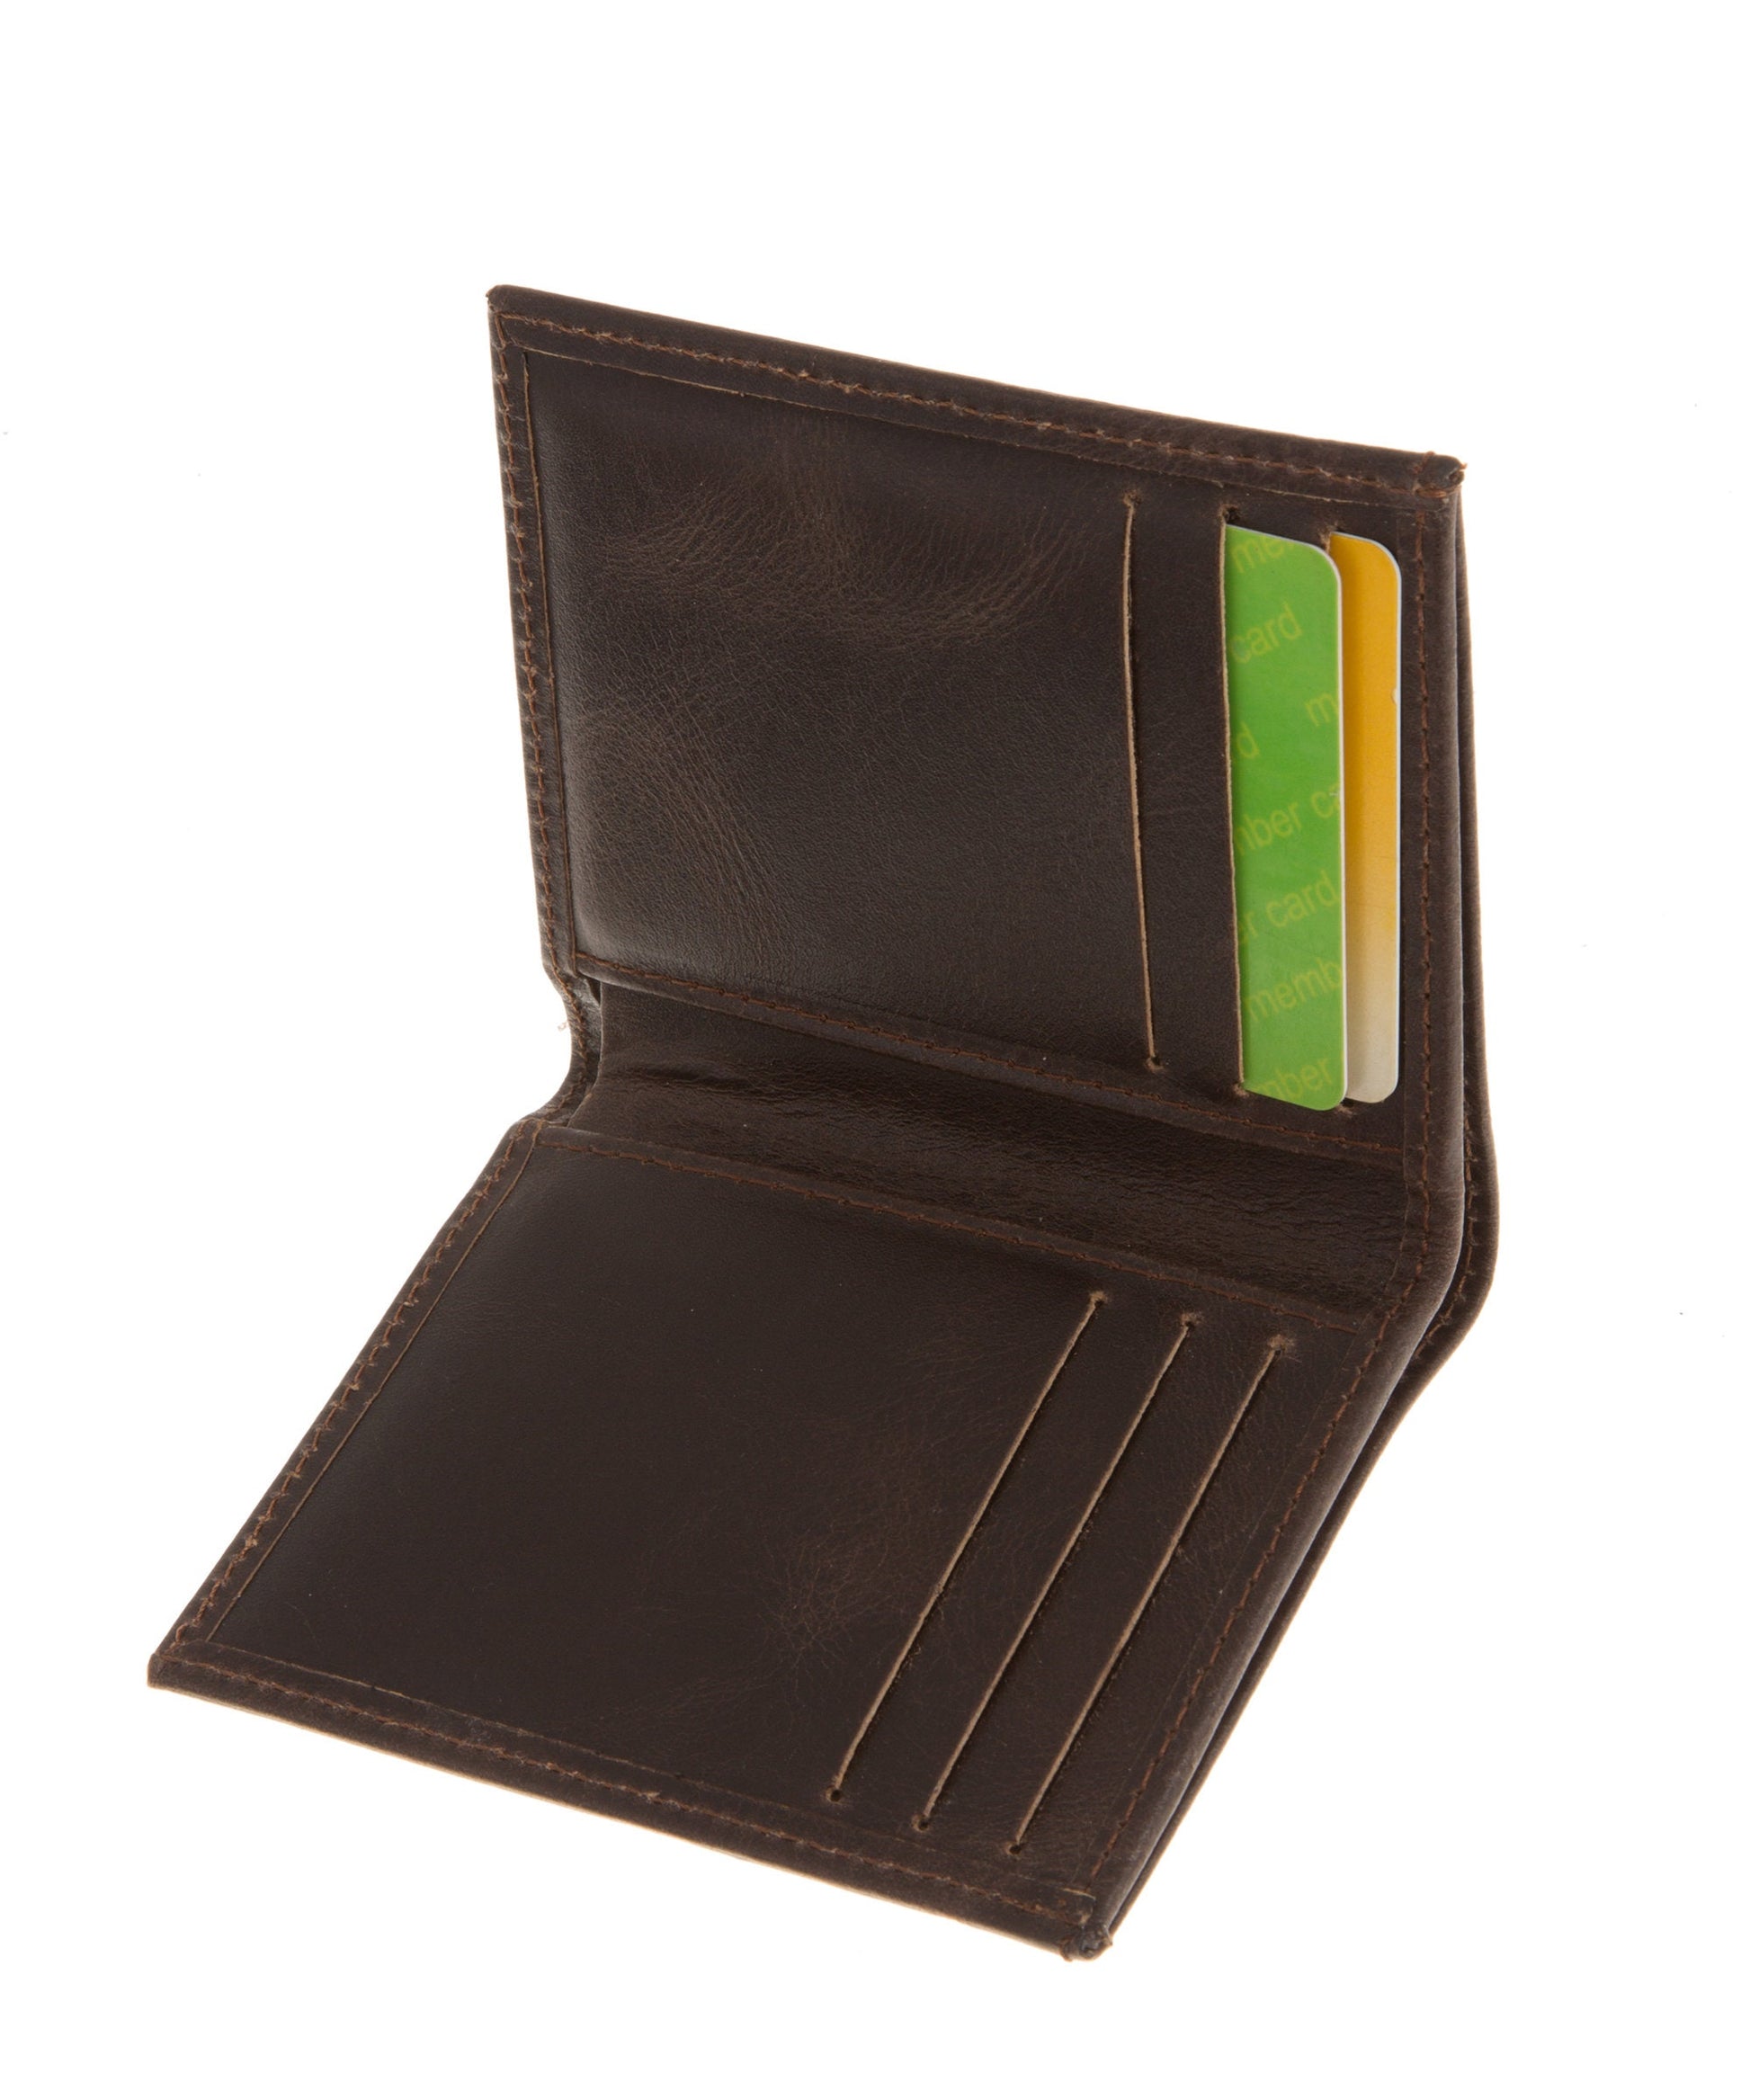 Brown leather front pocket wallet, Mens slim front pocket wallet, Leather cardholder, Bifold Wallet